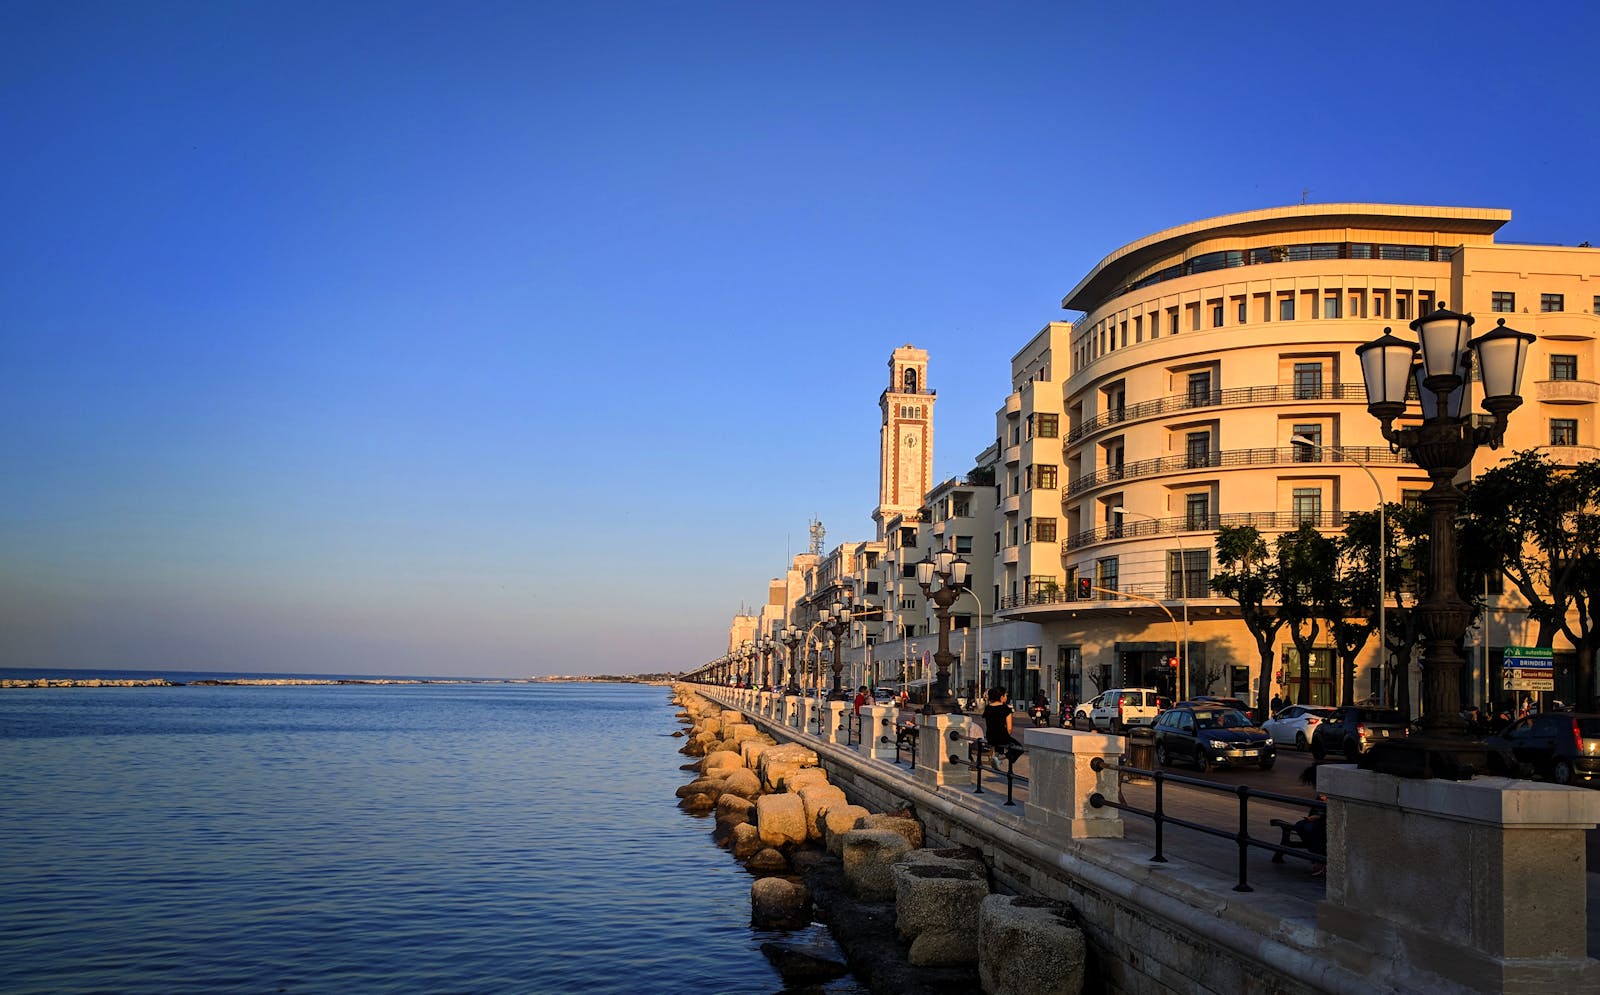 JR Hotels Grande Albergo delle Nazioni Bari, Adriatic Sea Coast, Bari, Italy